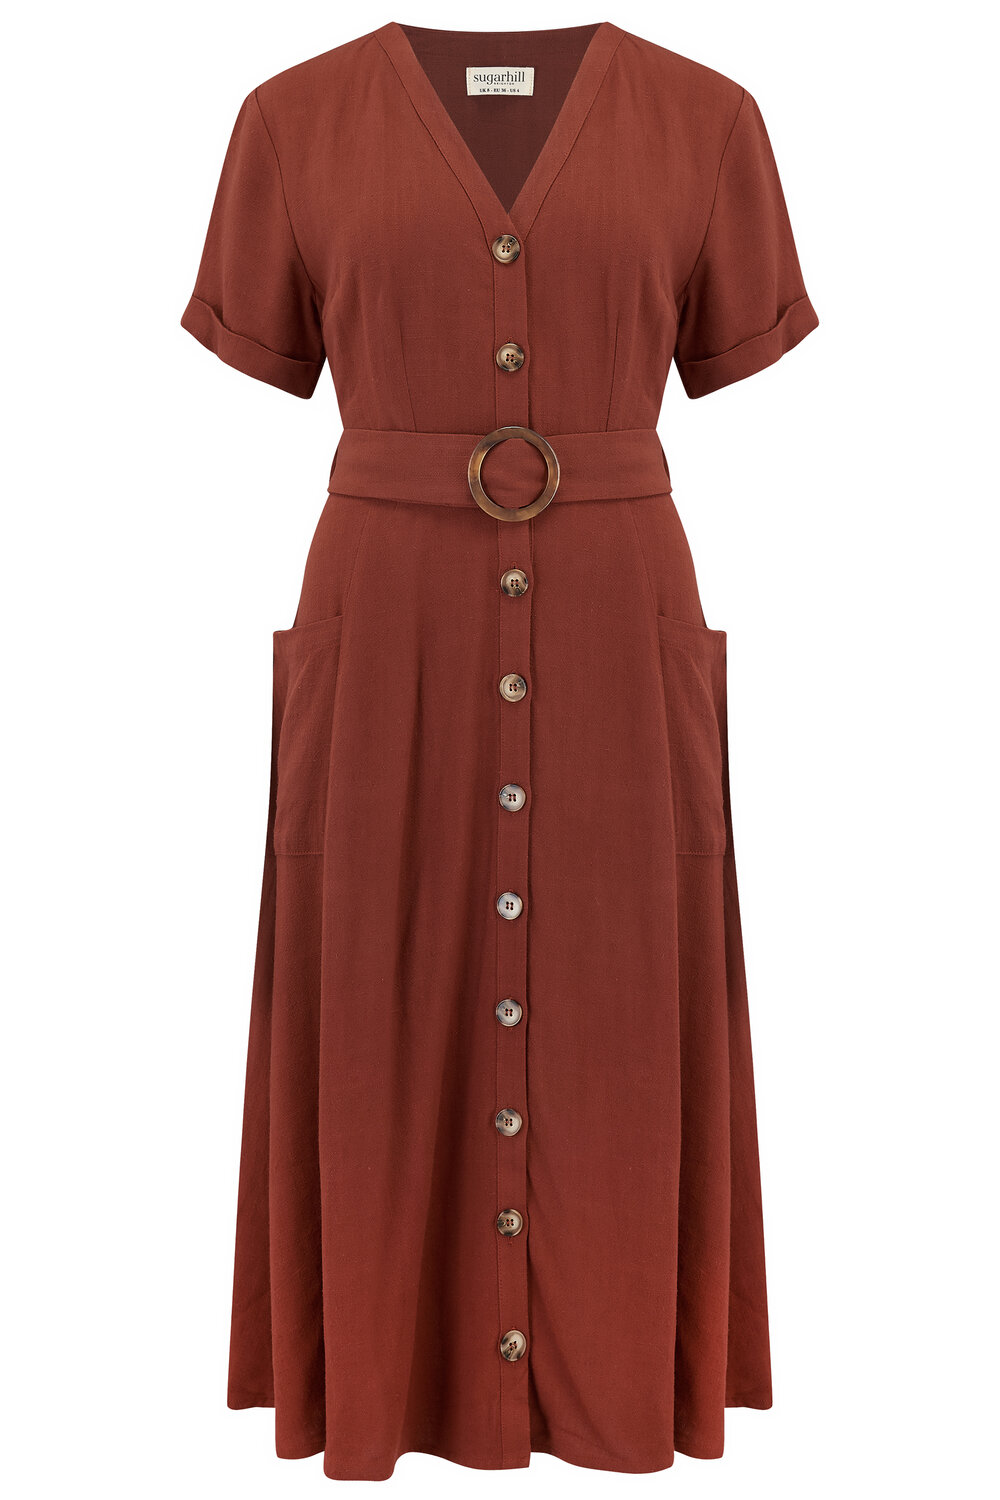 rust linen dress